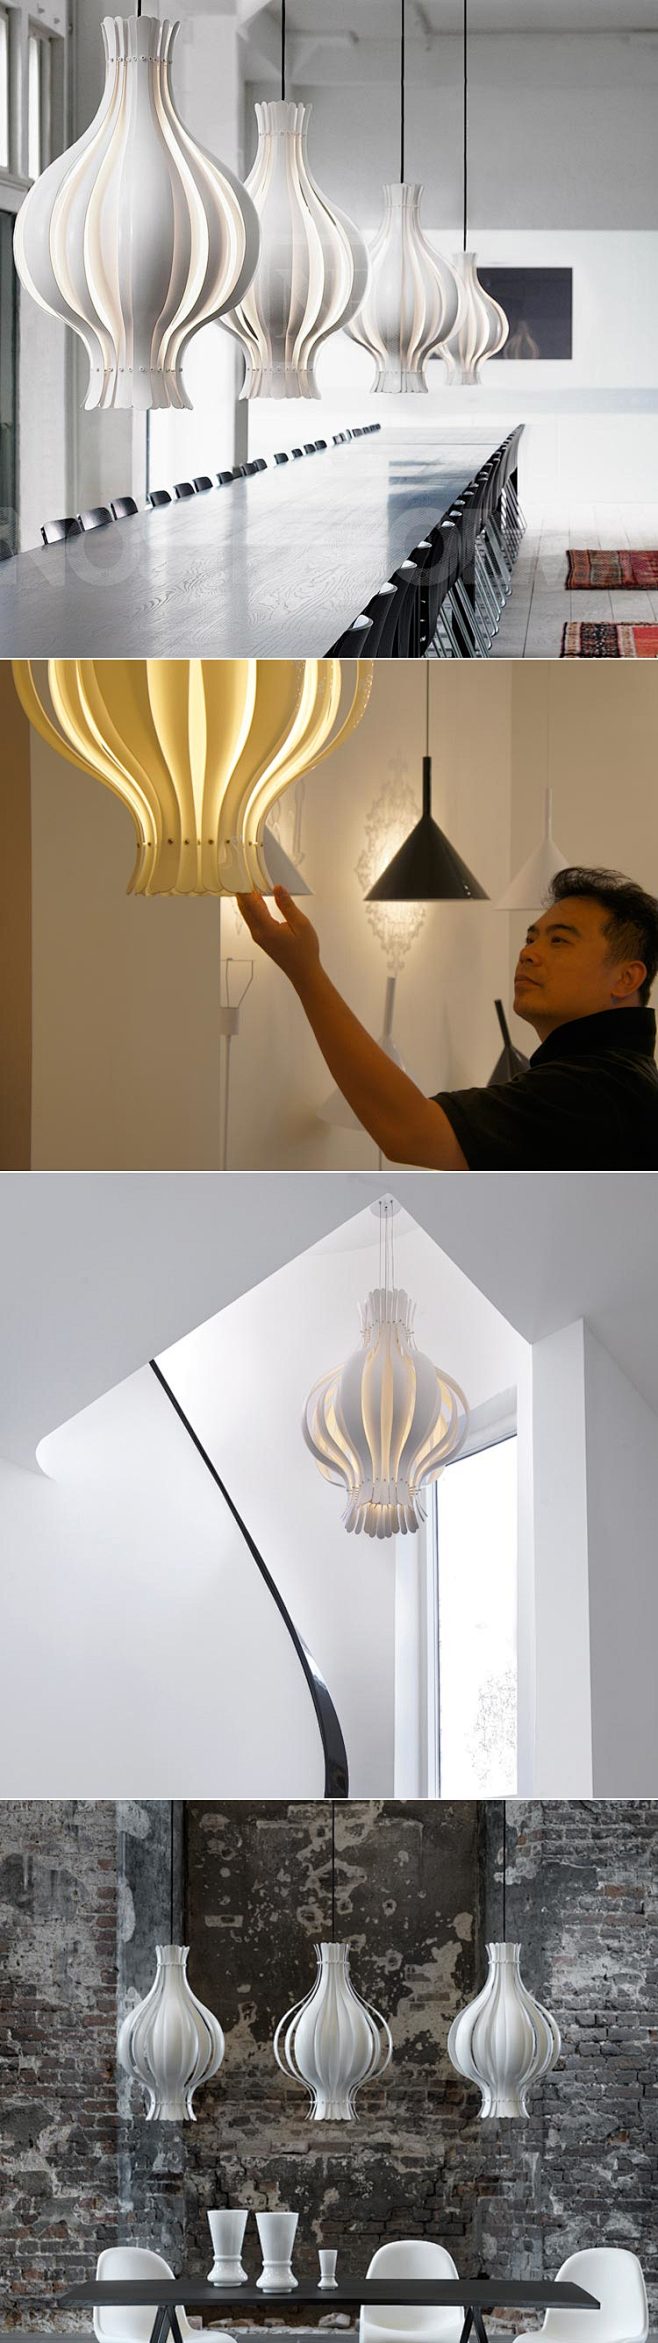 【洋葱吊灯】
丹麦著名家具设计师维奈•潘...